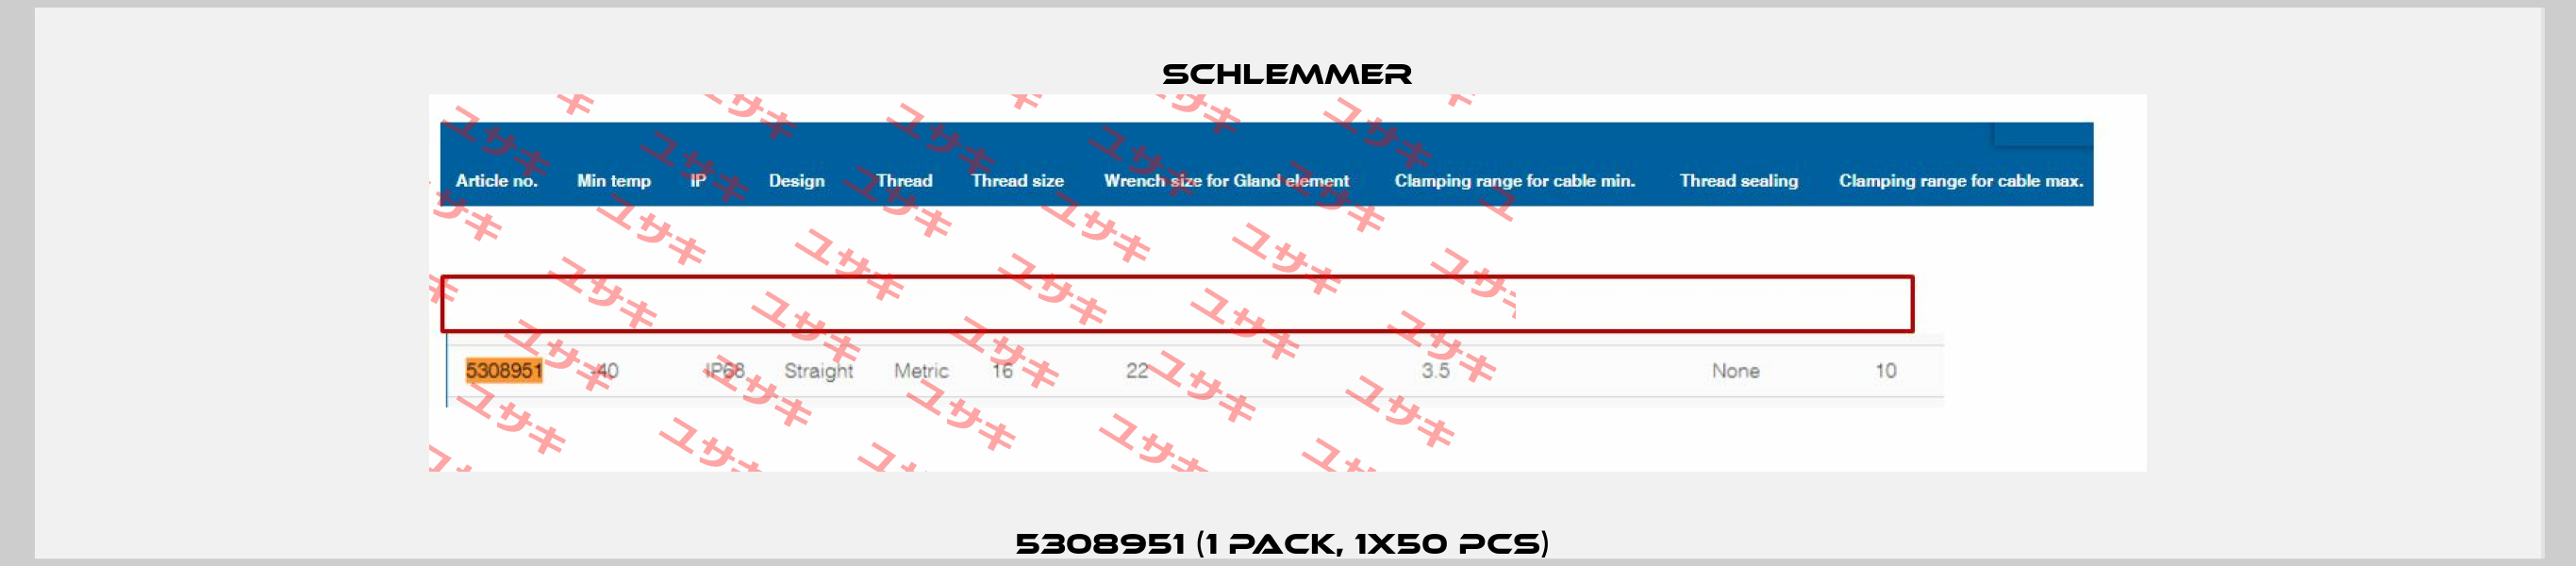 5308951 (1 pack, 1x50 pcs)  Schlemmer